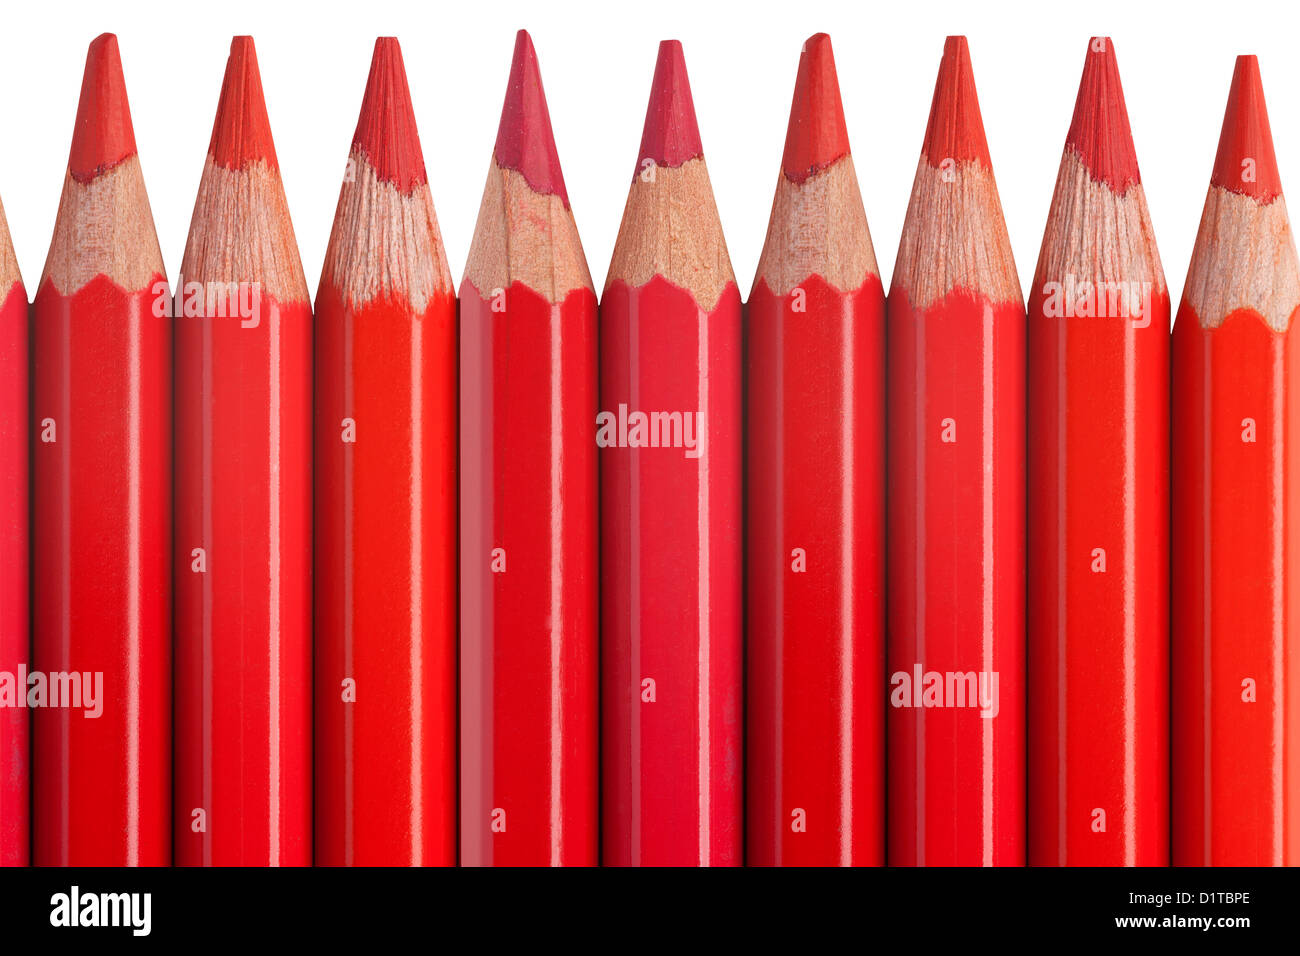 rote Stifte isoliert auf weißem Hintergrund oder Farbe Buntstifte  Stockfotografie - Alamy